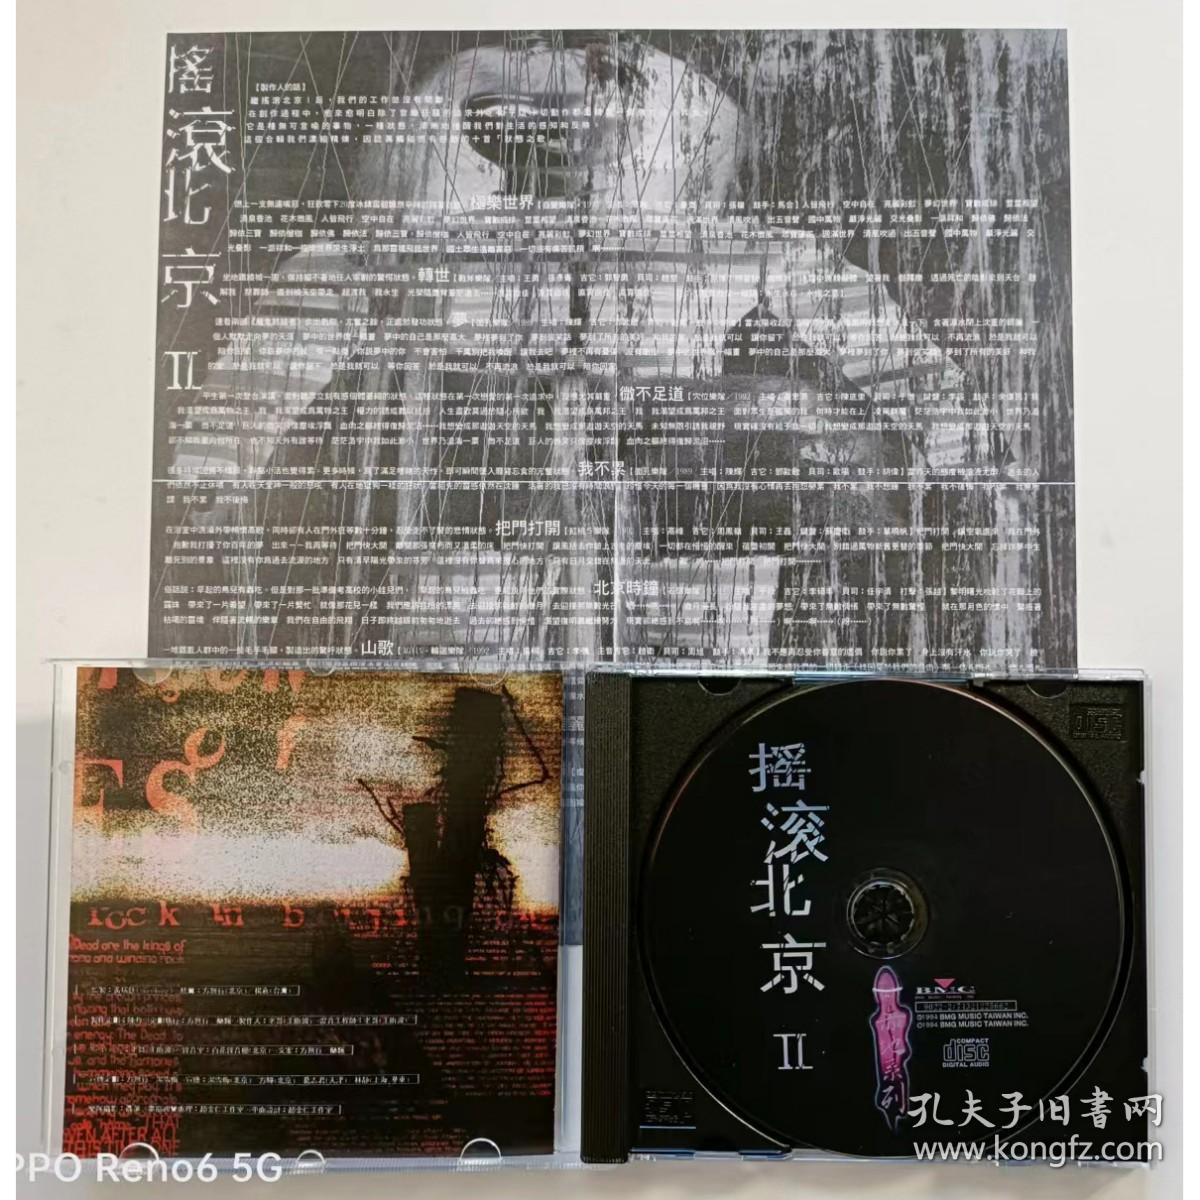 摇滚北京2 面孔 石头 瘦人 自觉 战斧 轮回等 正版盒装CD+歌词